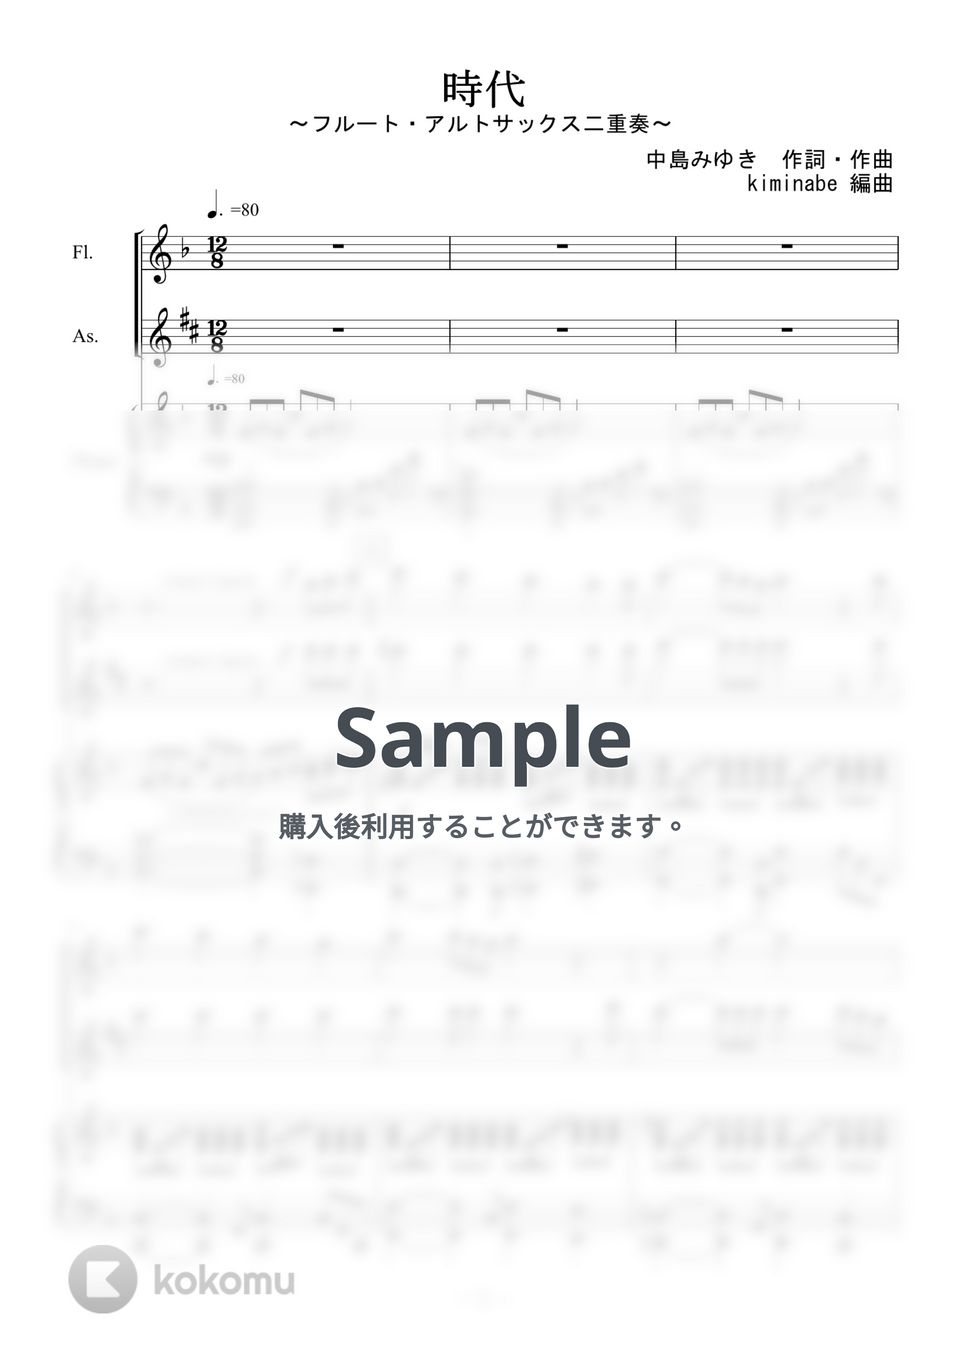 中島みゆき - 時代 (フルート・アルトサックス二重奏) by kiminabe